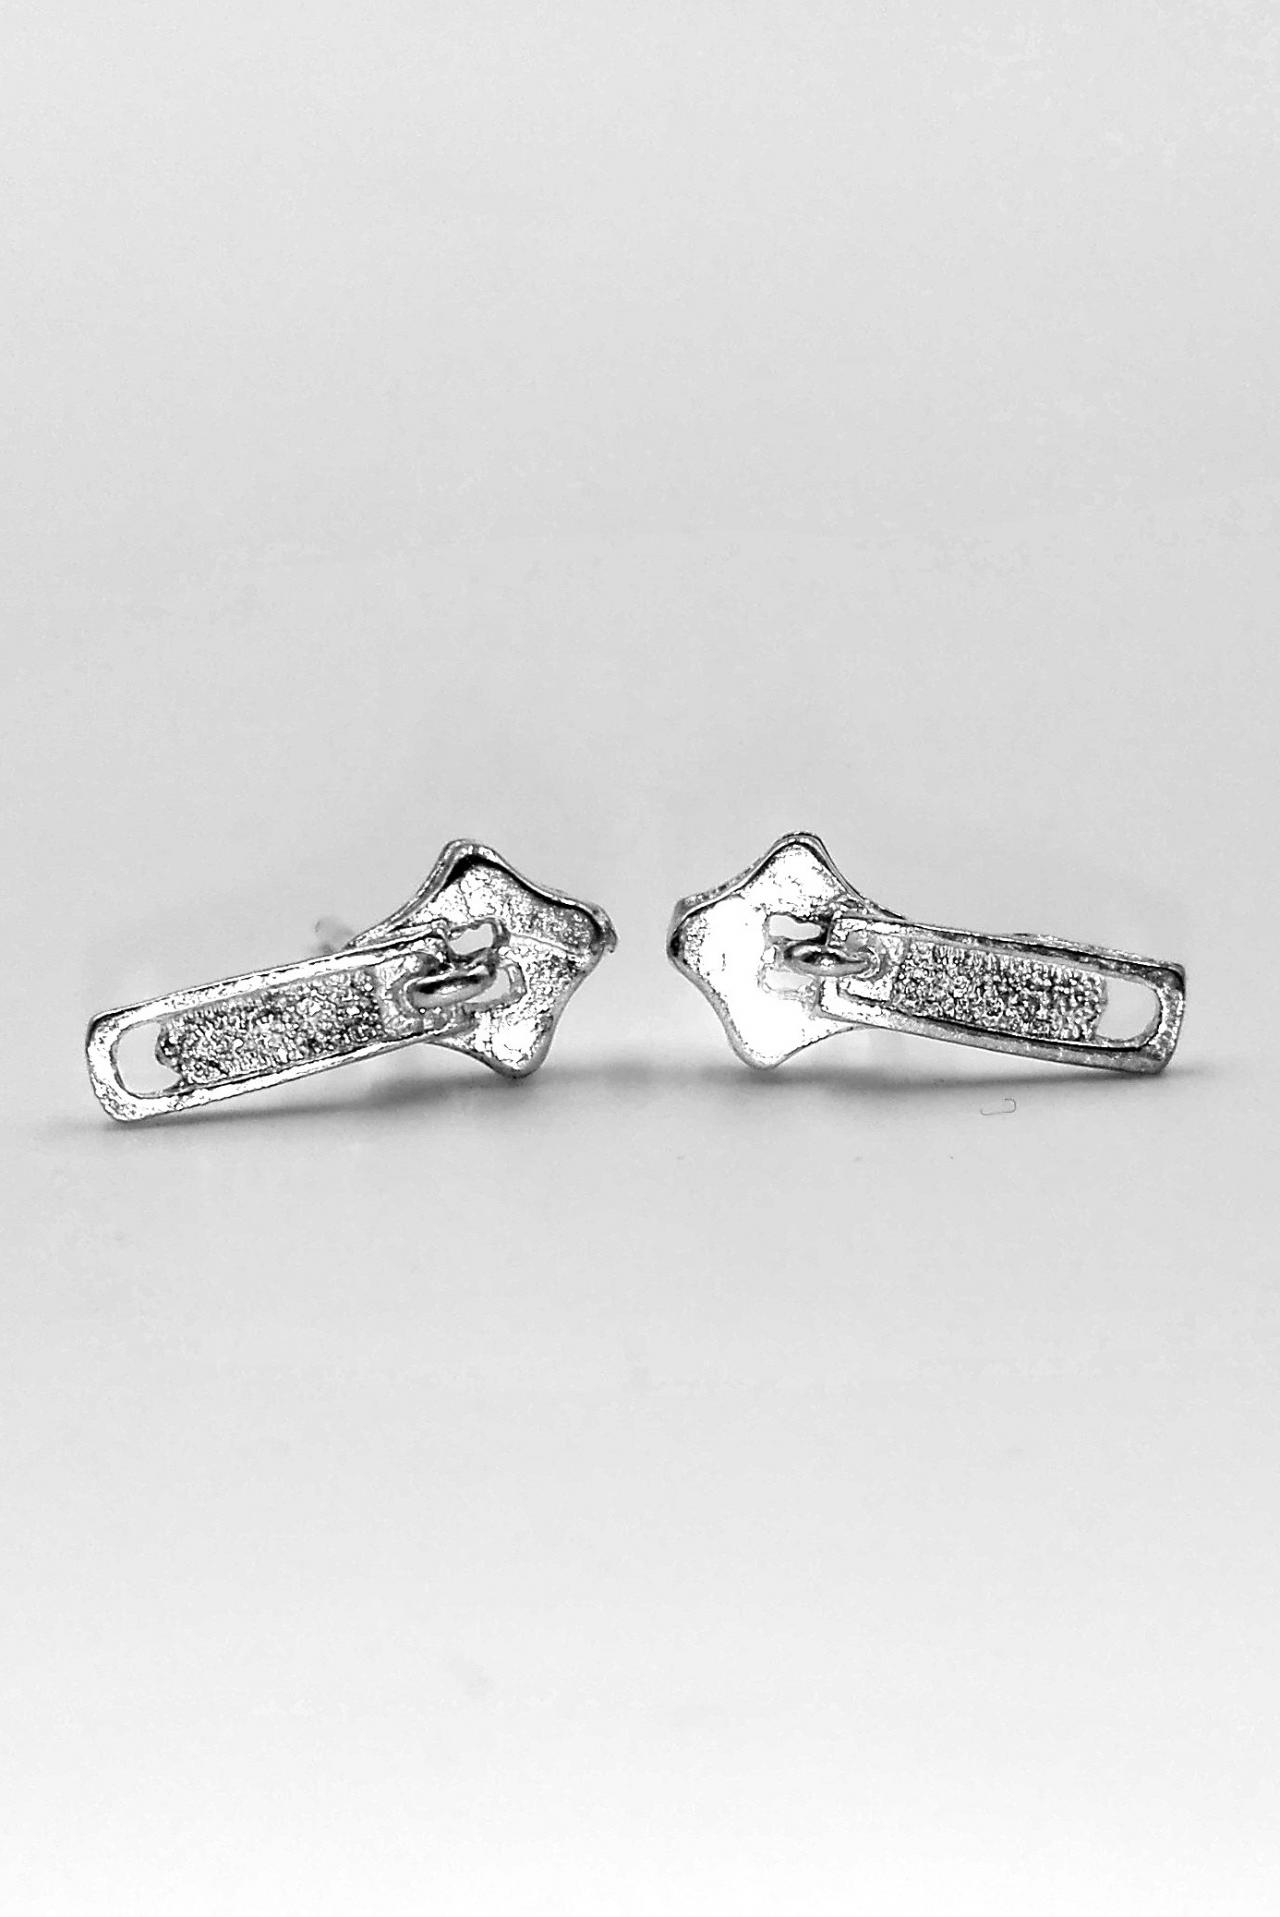 Sterling Silver Zip Earrings Stud Earrings Women Silver Jewelry Gift For Her Zipper Silver Earrings For Women Gift Fashion Earrings Jewelry